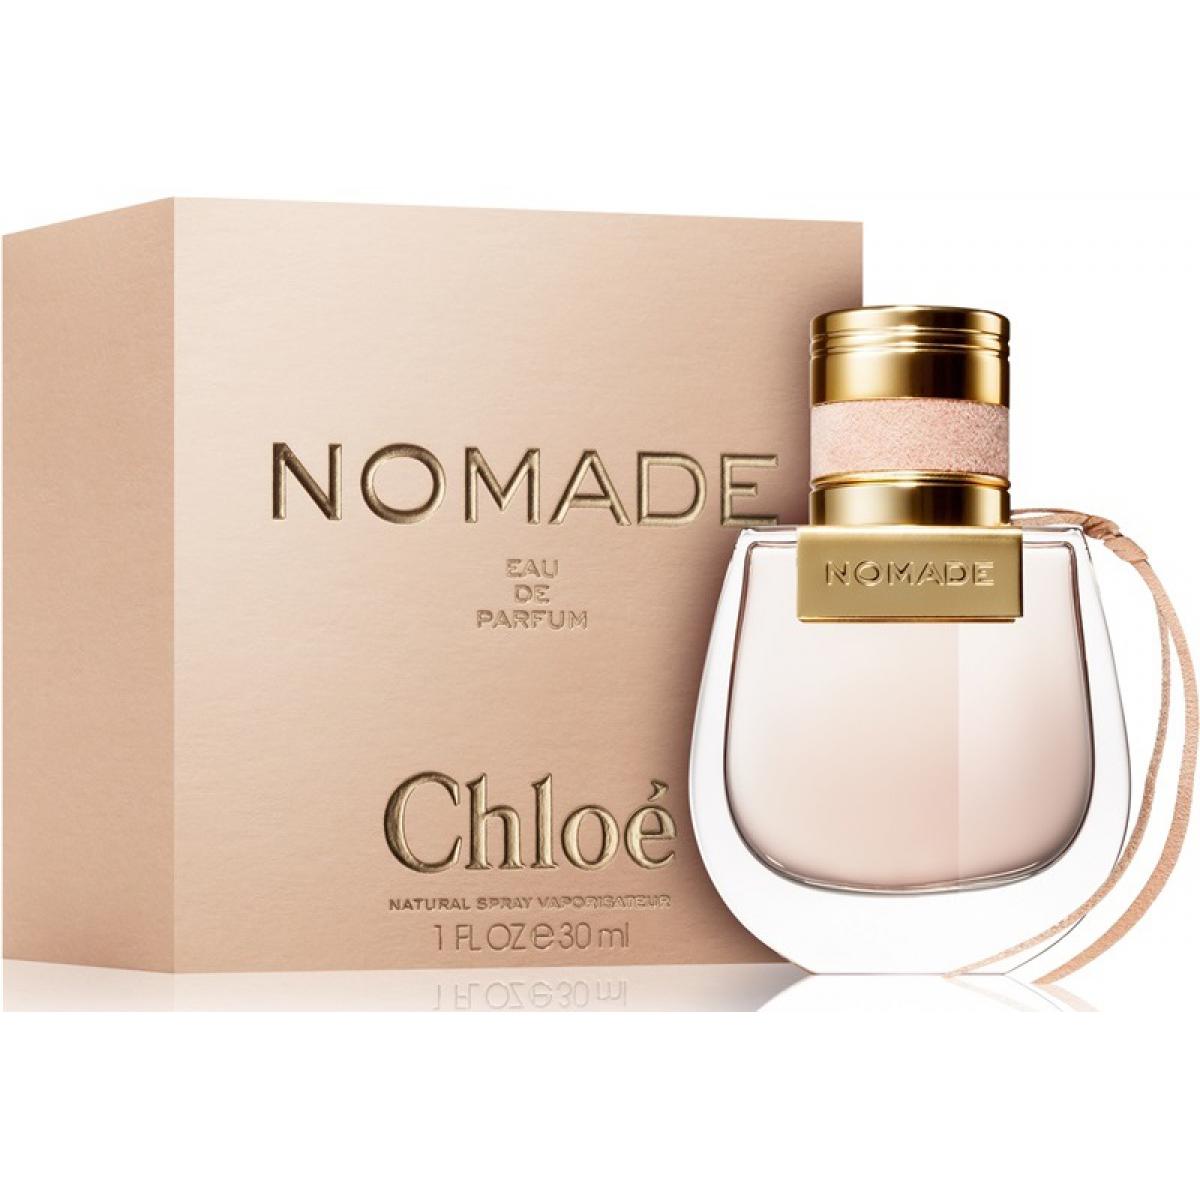 Parfum Chloé - Homecare24